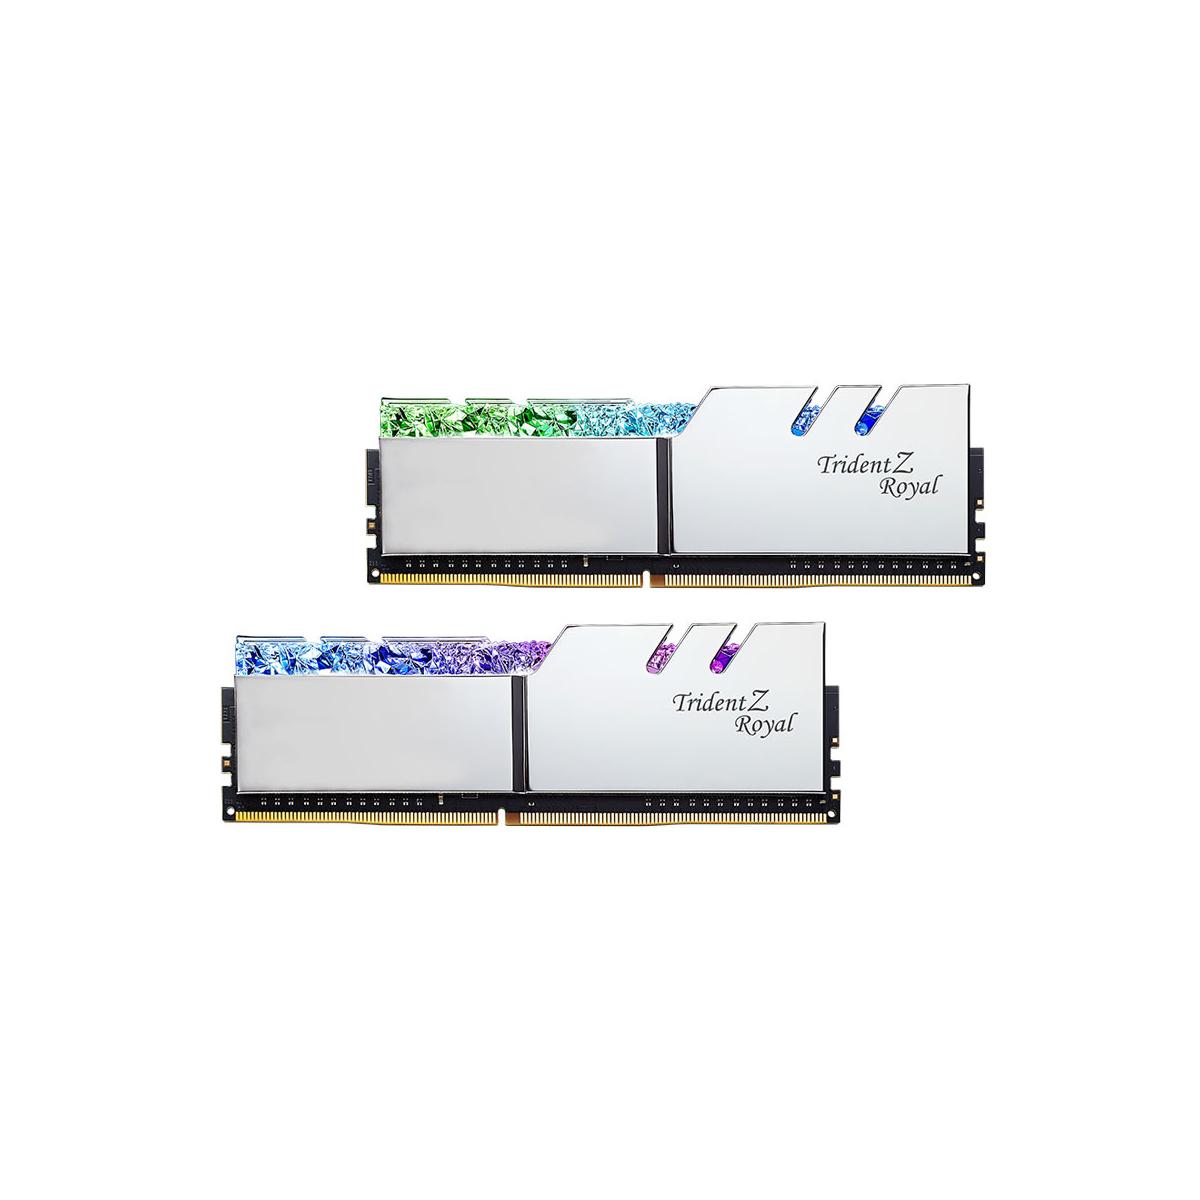 MEMORIA DIMM DDR4 G.SKILL (F4-3200C16D-16GTRS) 16GB (2X8GB) 3200MHZ, TRIDENT Z ROYAL SILVER - F4-3200C16D-16GTRS